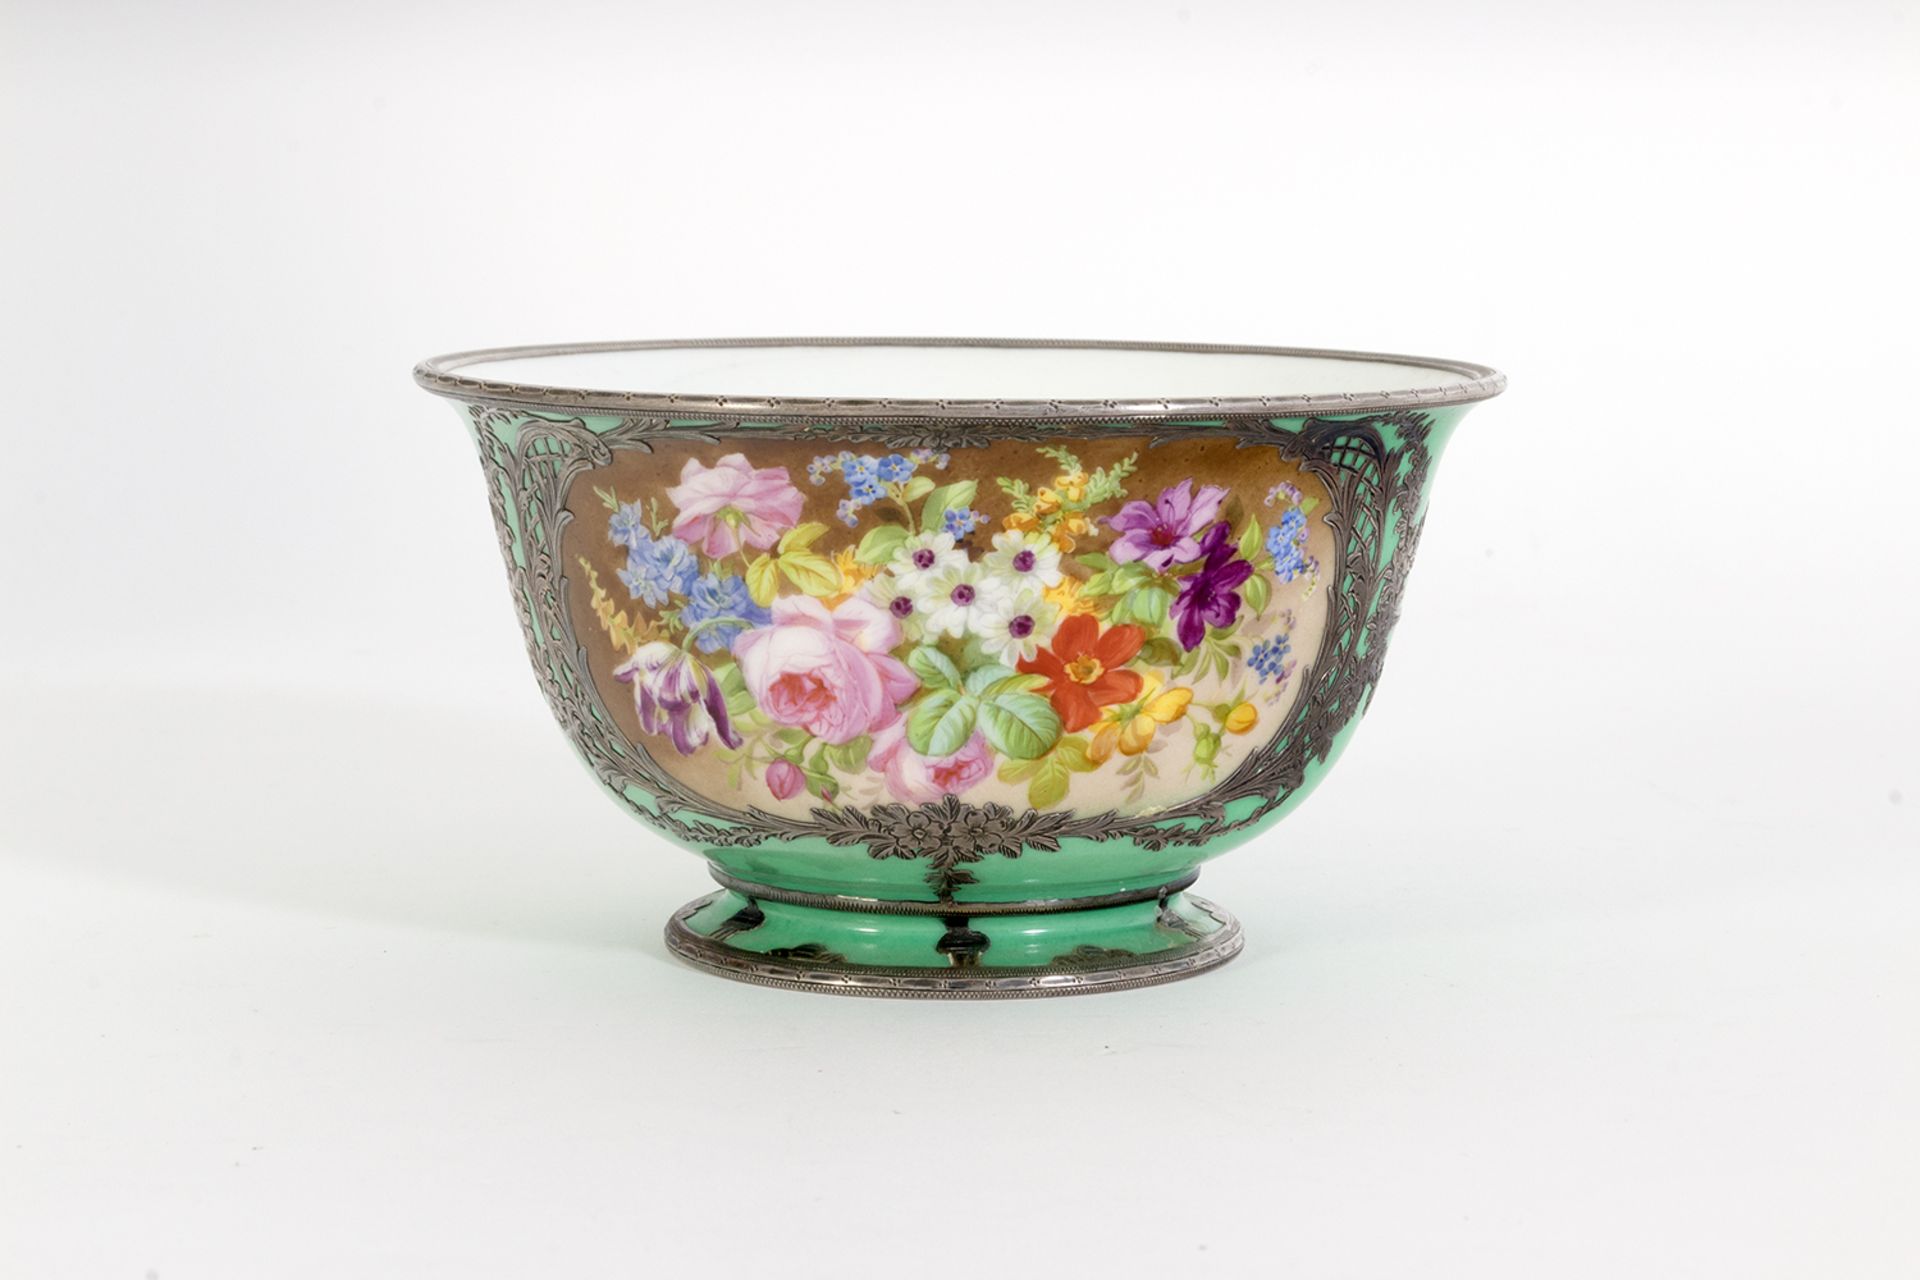 Conjunto de aguamanil, jofaina y cuenco en porcelana francesa estilo Sèvres con decoración floral y - Image 11 of 11